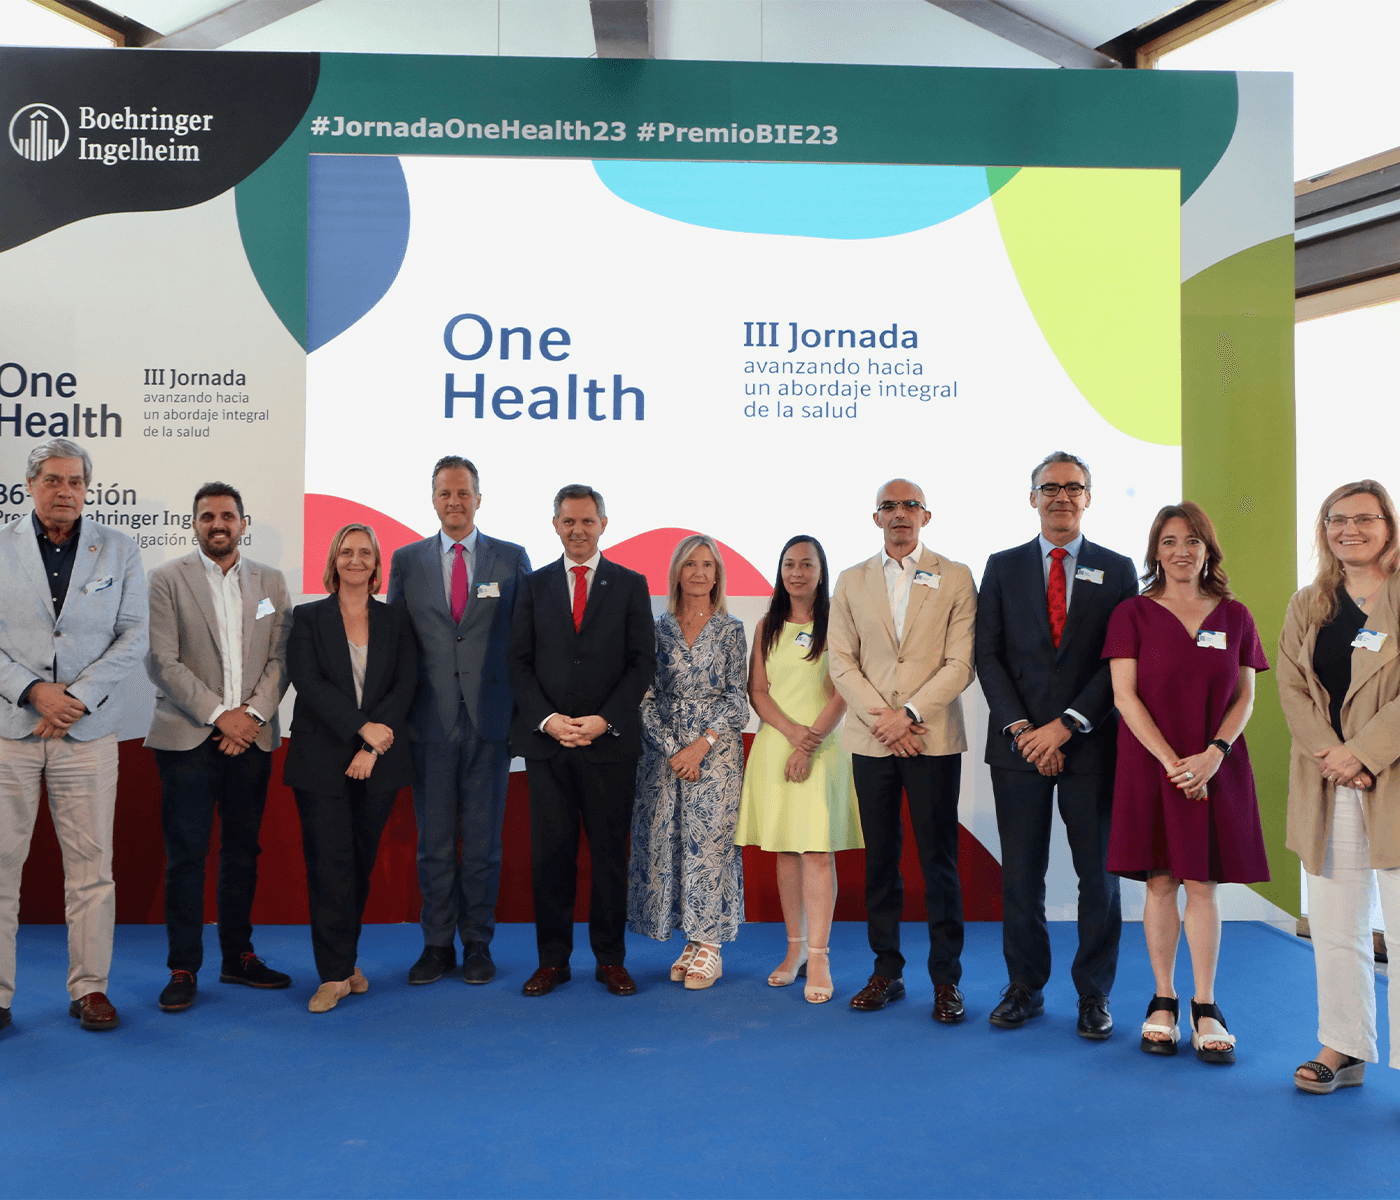 El Ministro Miñones reafirma el compromiso del Gobierno con la integración de One Health en las políticas sanitarias públicas